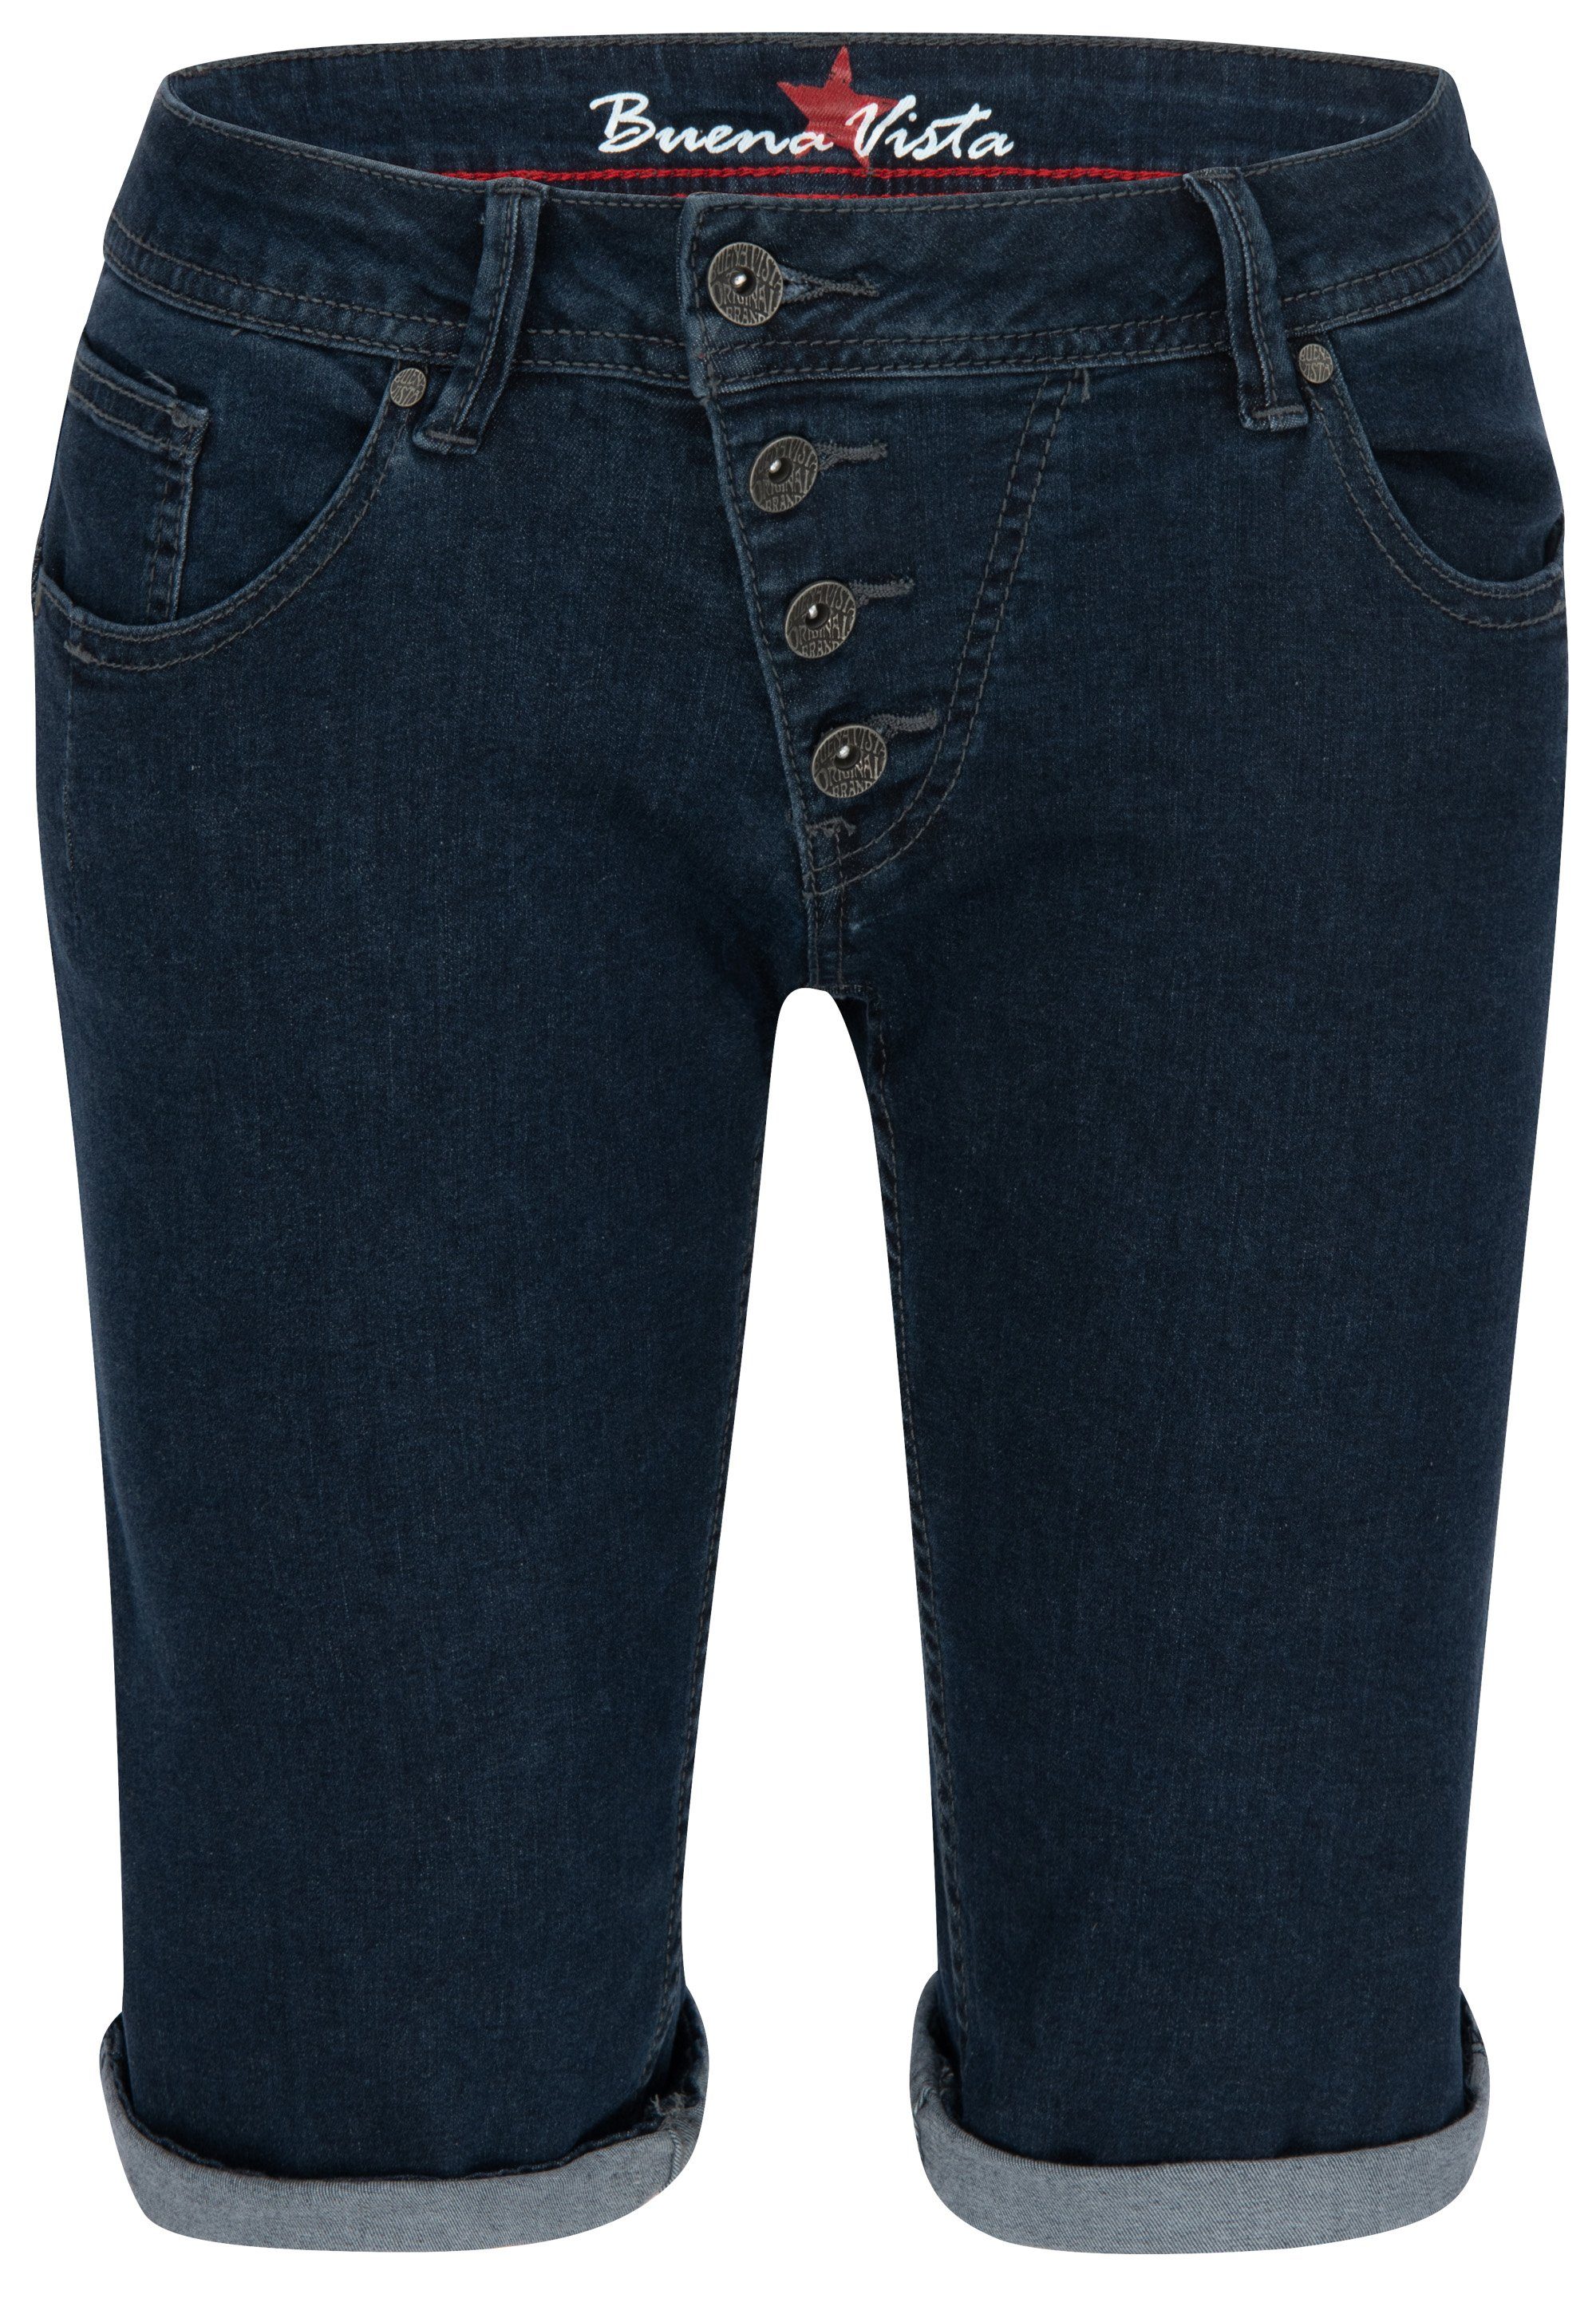 Buena Vista Stretch-Jeans BUENA VISTA MALIBU SHORT raw blue 2104 J5025 212.1933 - Stretch Denim